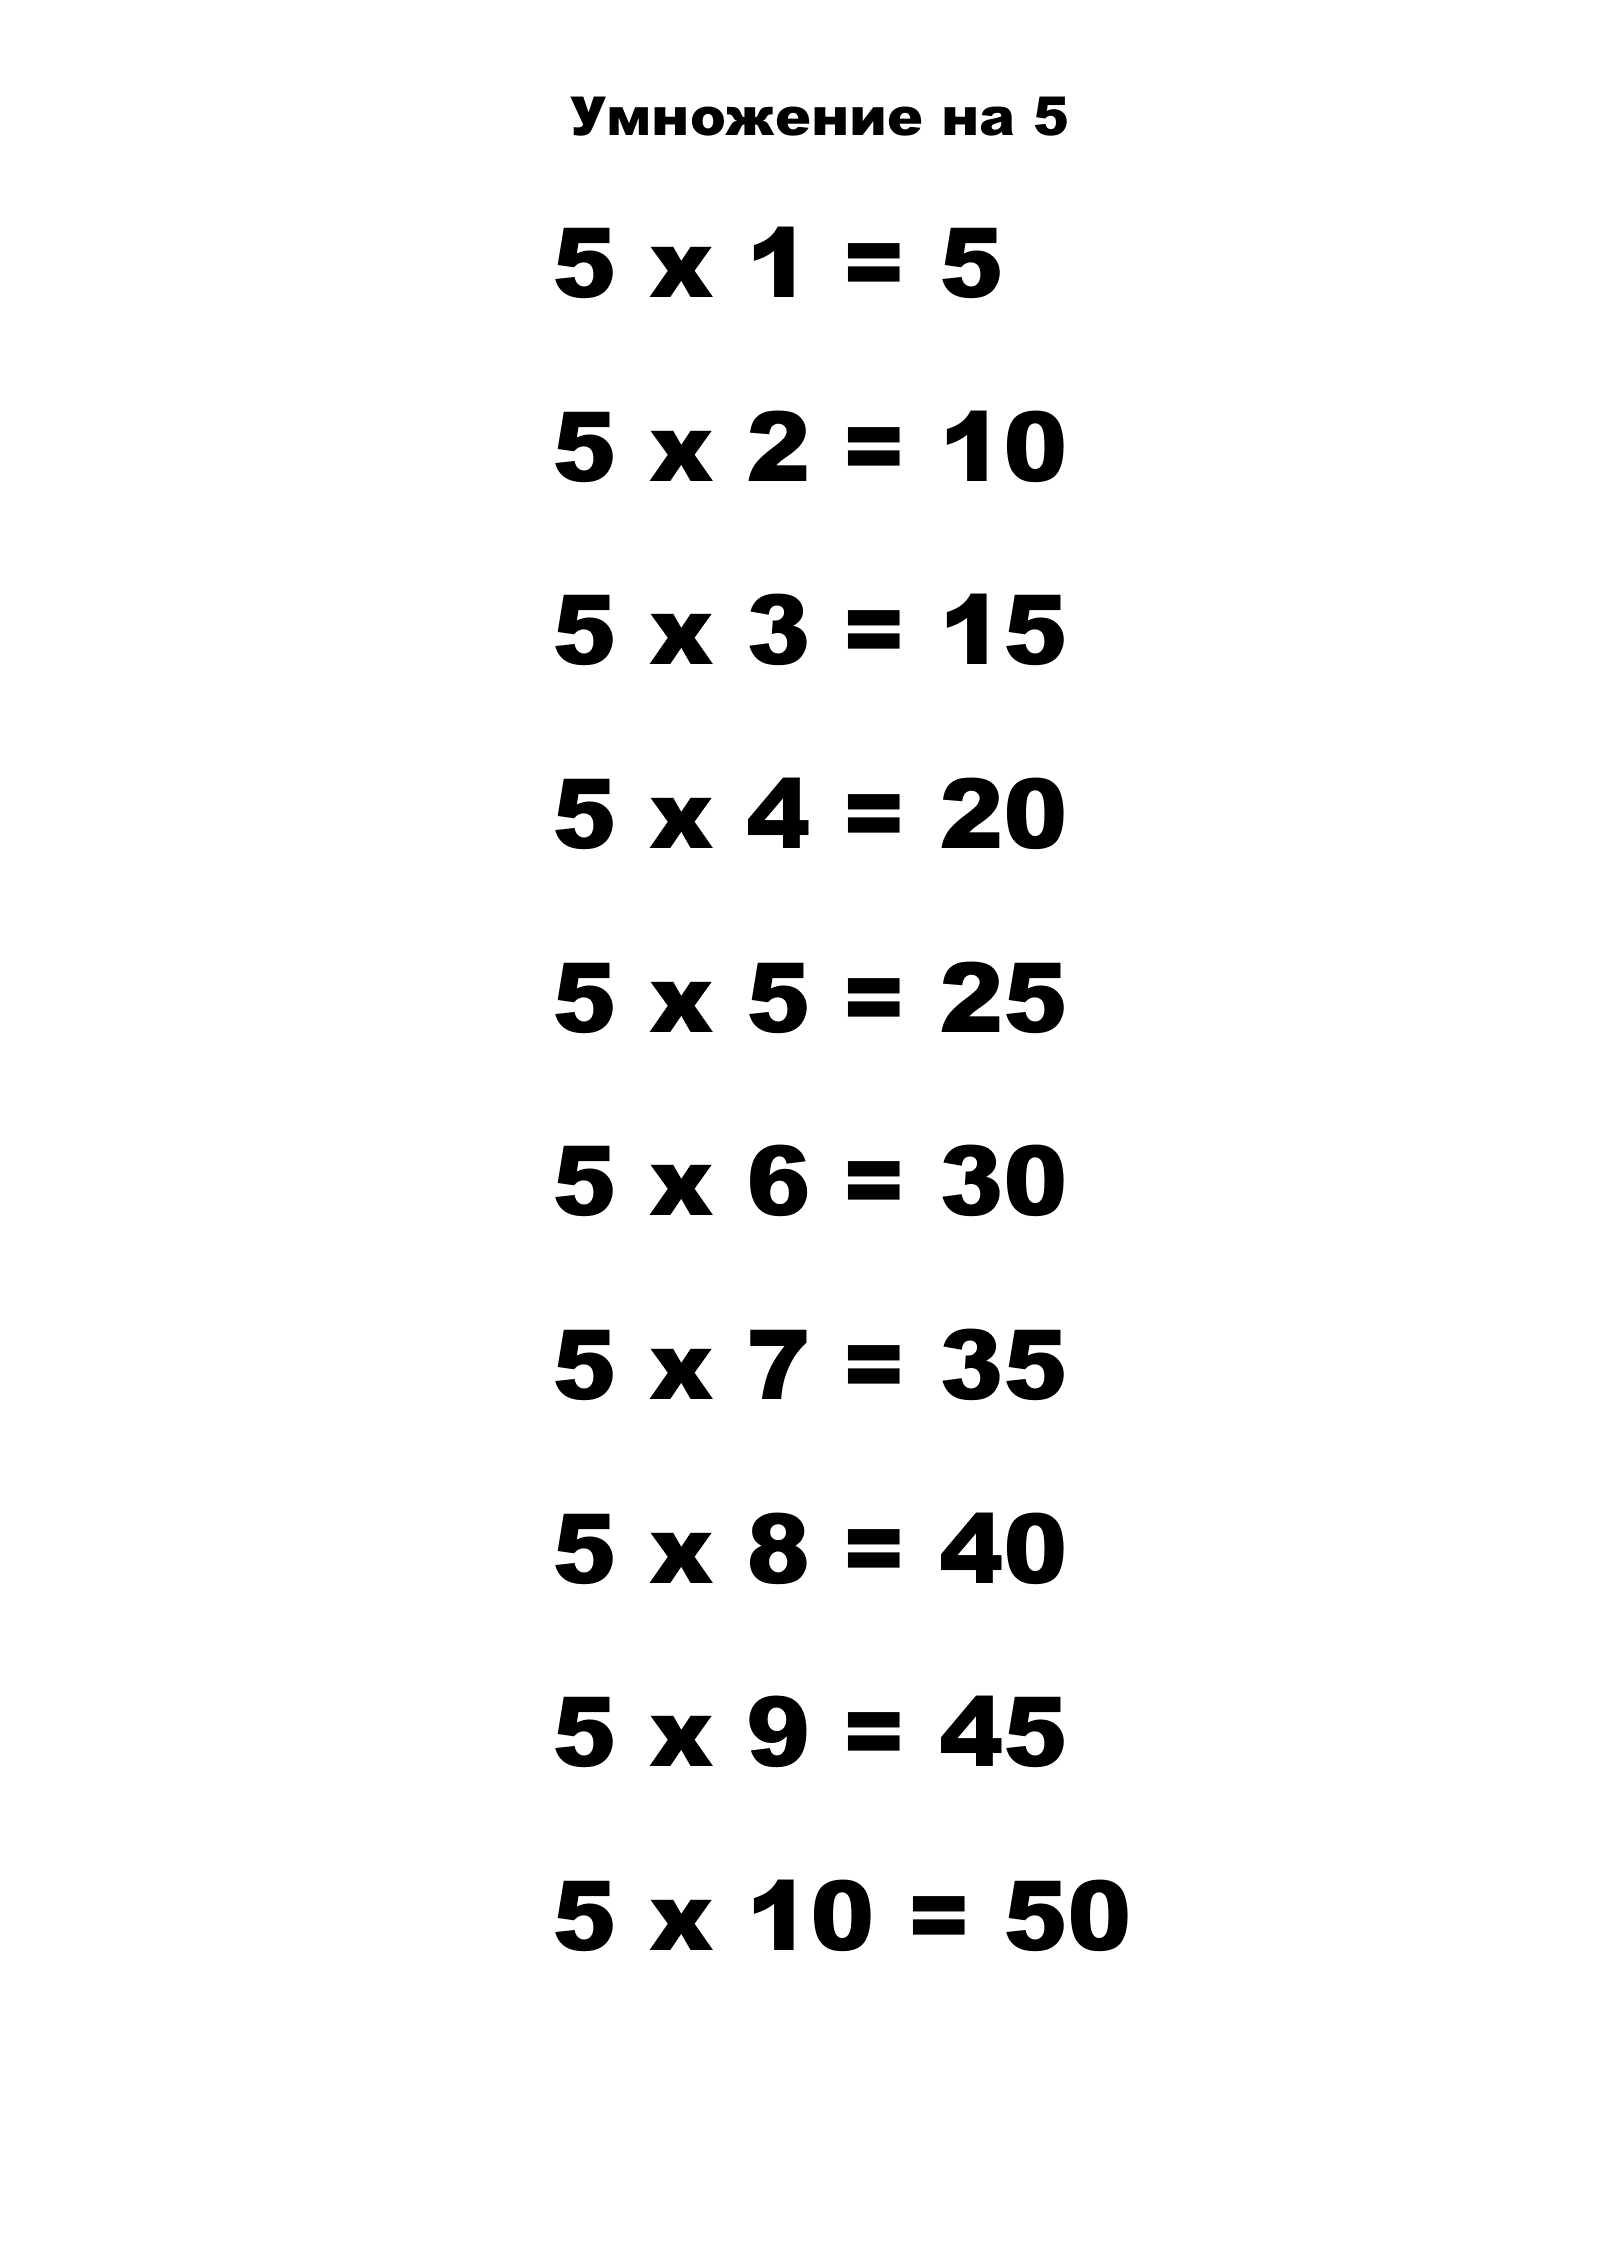 Таблица умножения на 5.